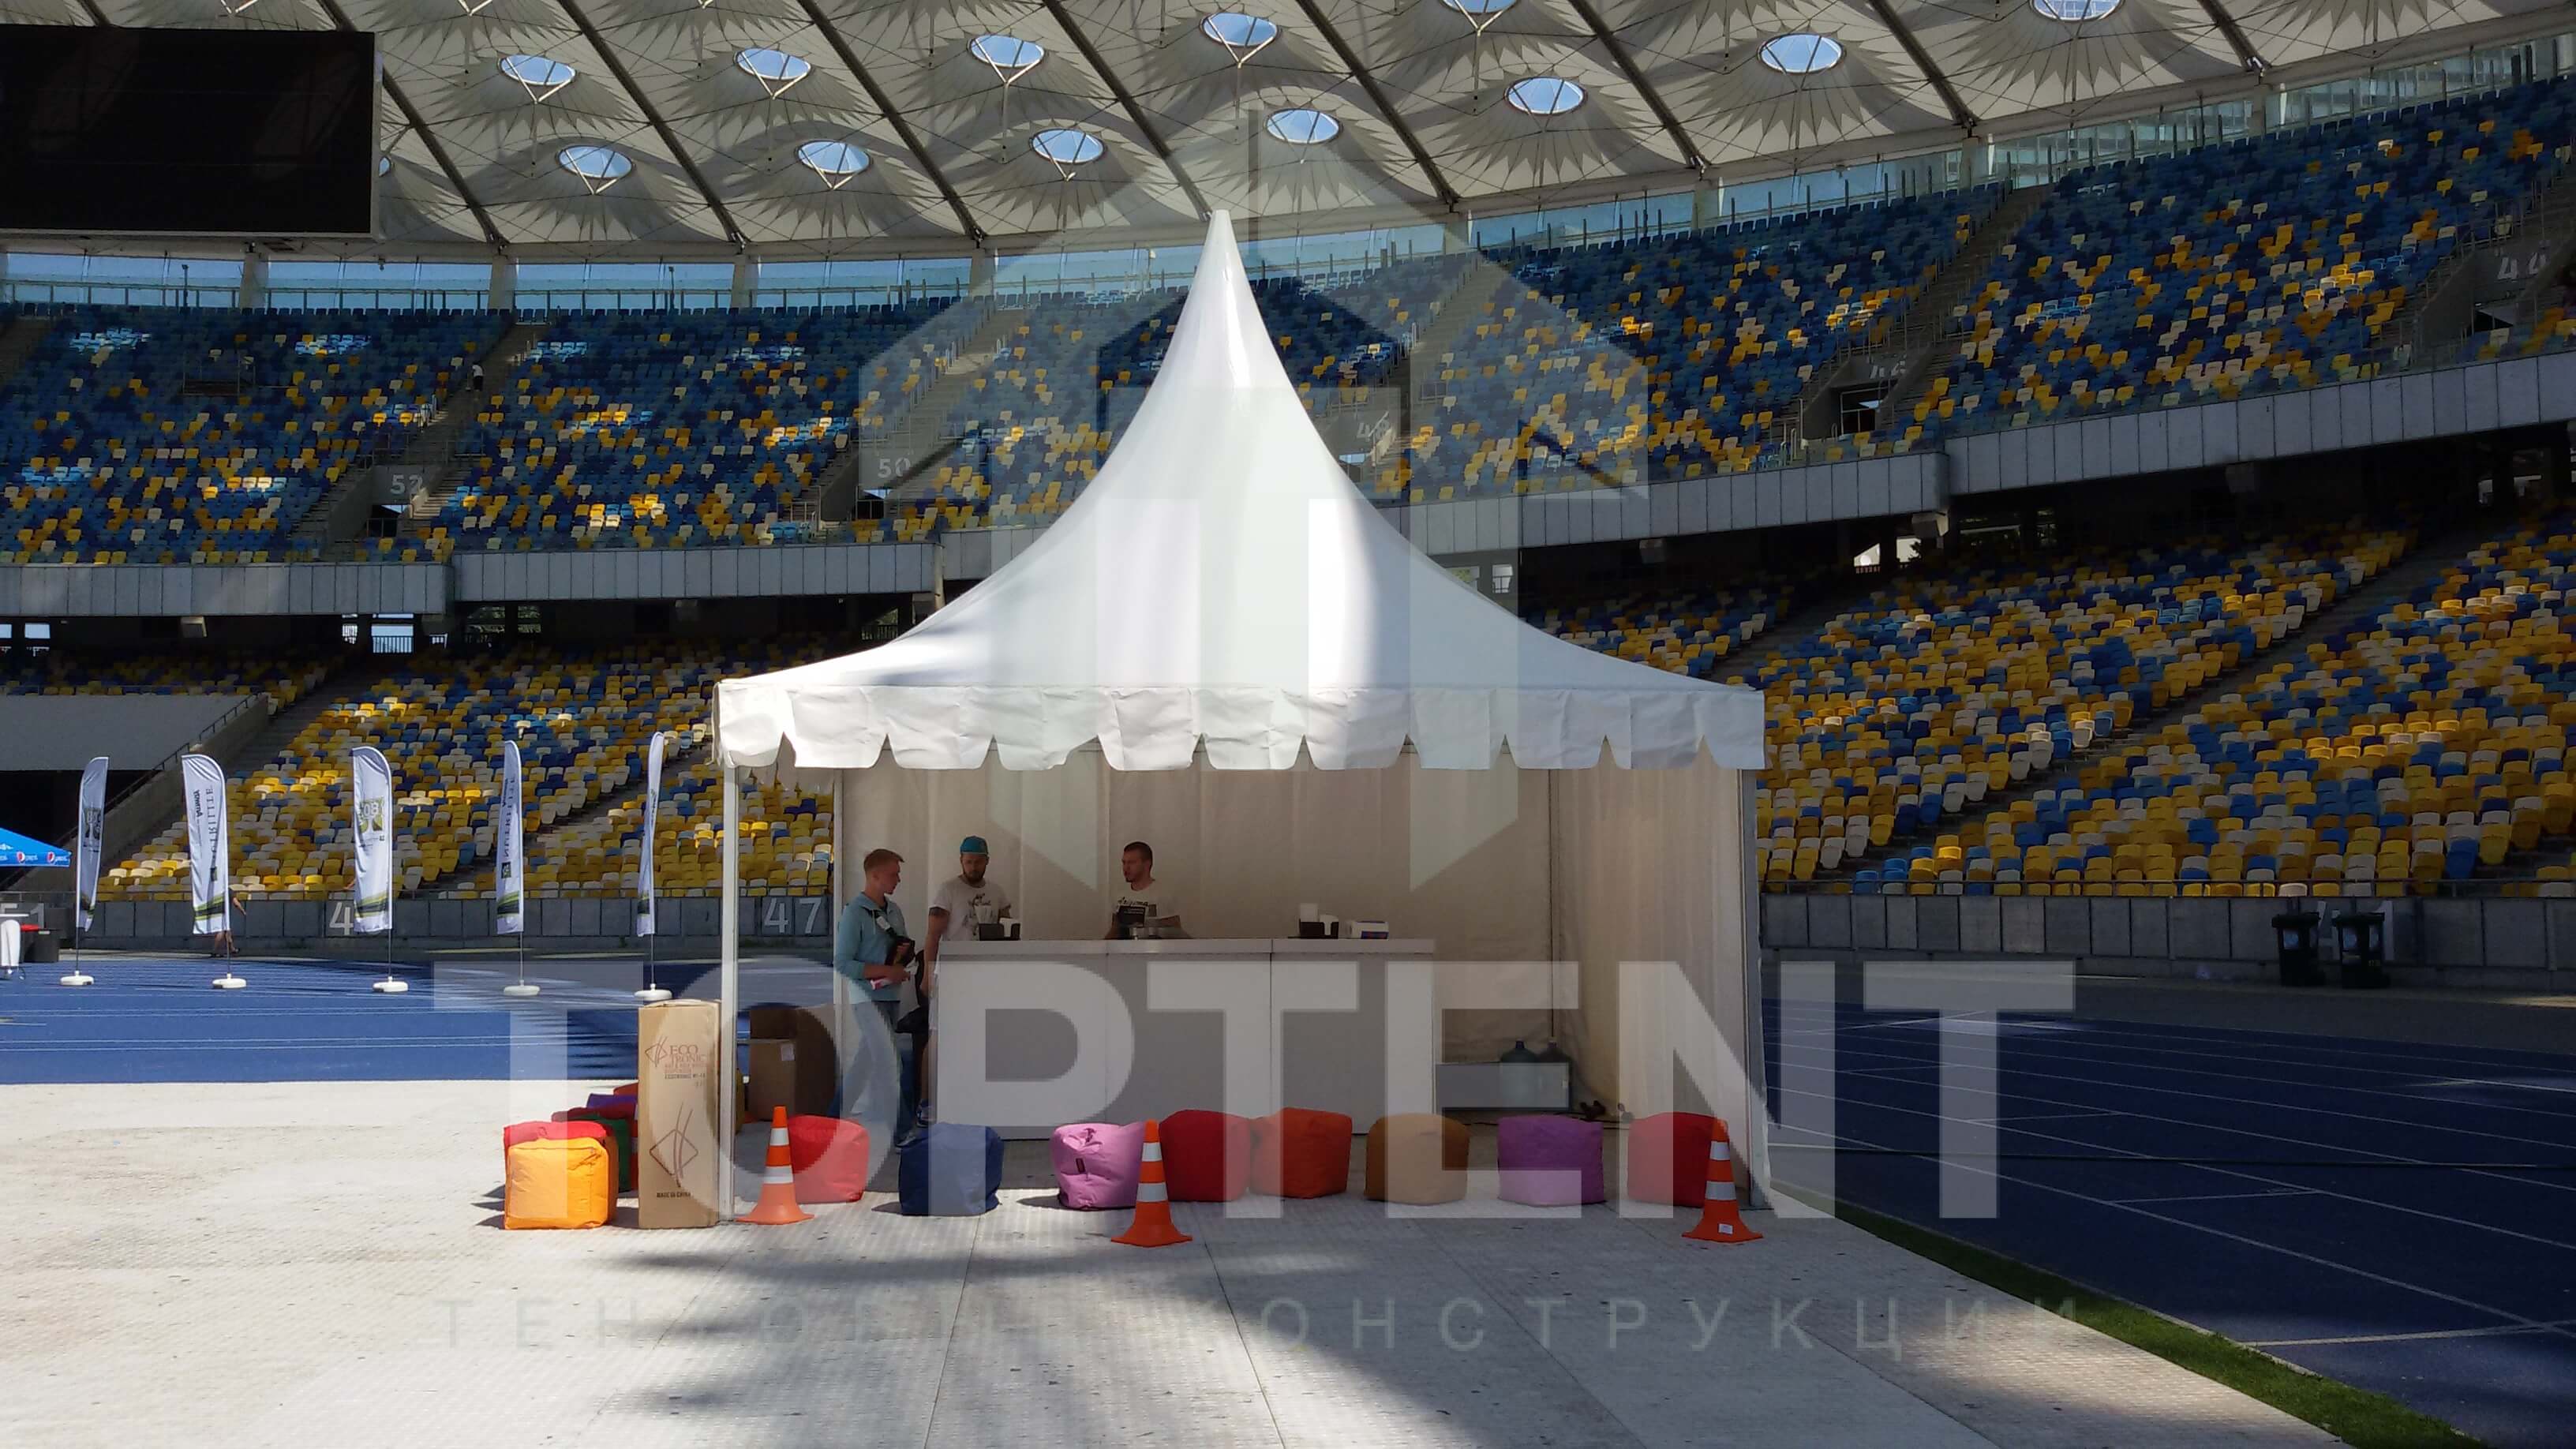 Аренда торговой палатки в Украине